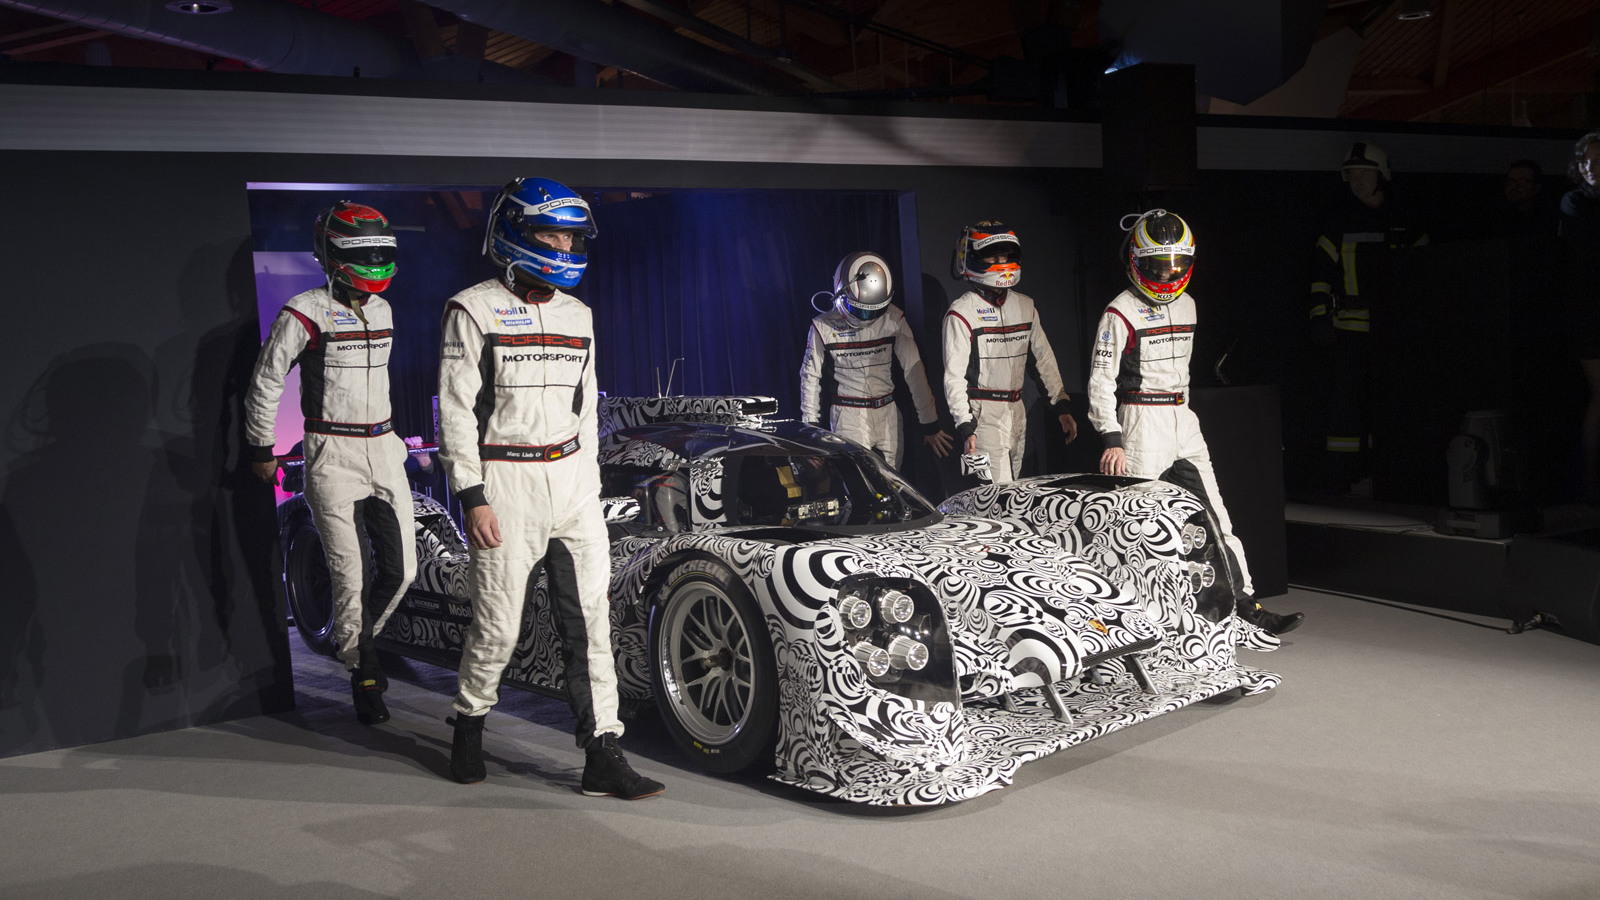 2014 Porsche 919 hybrid Le Mans prototype race car launch